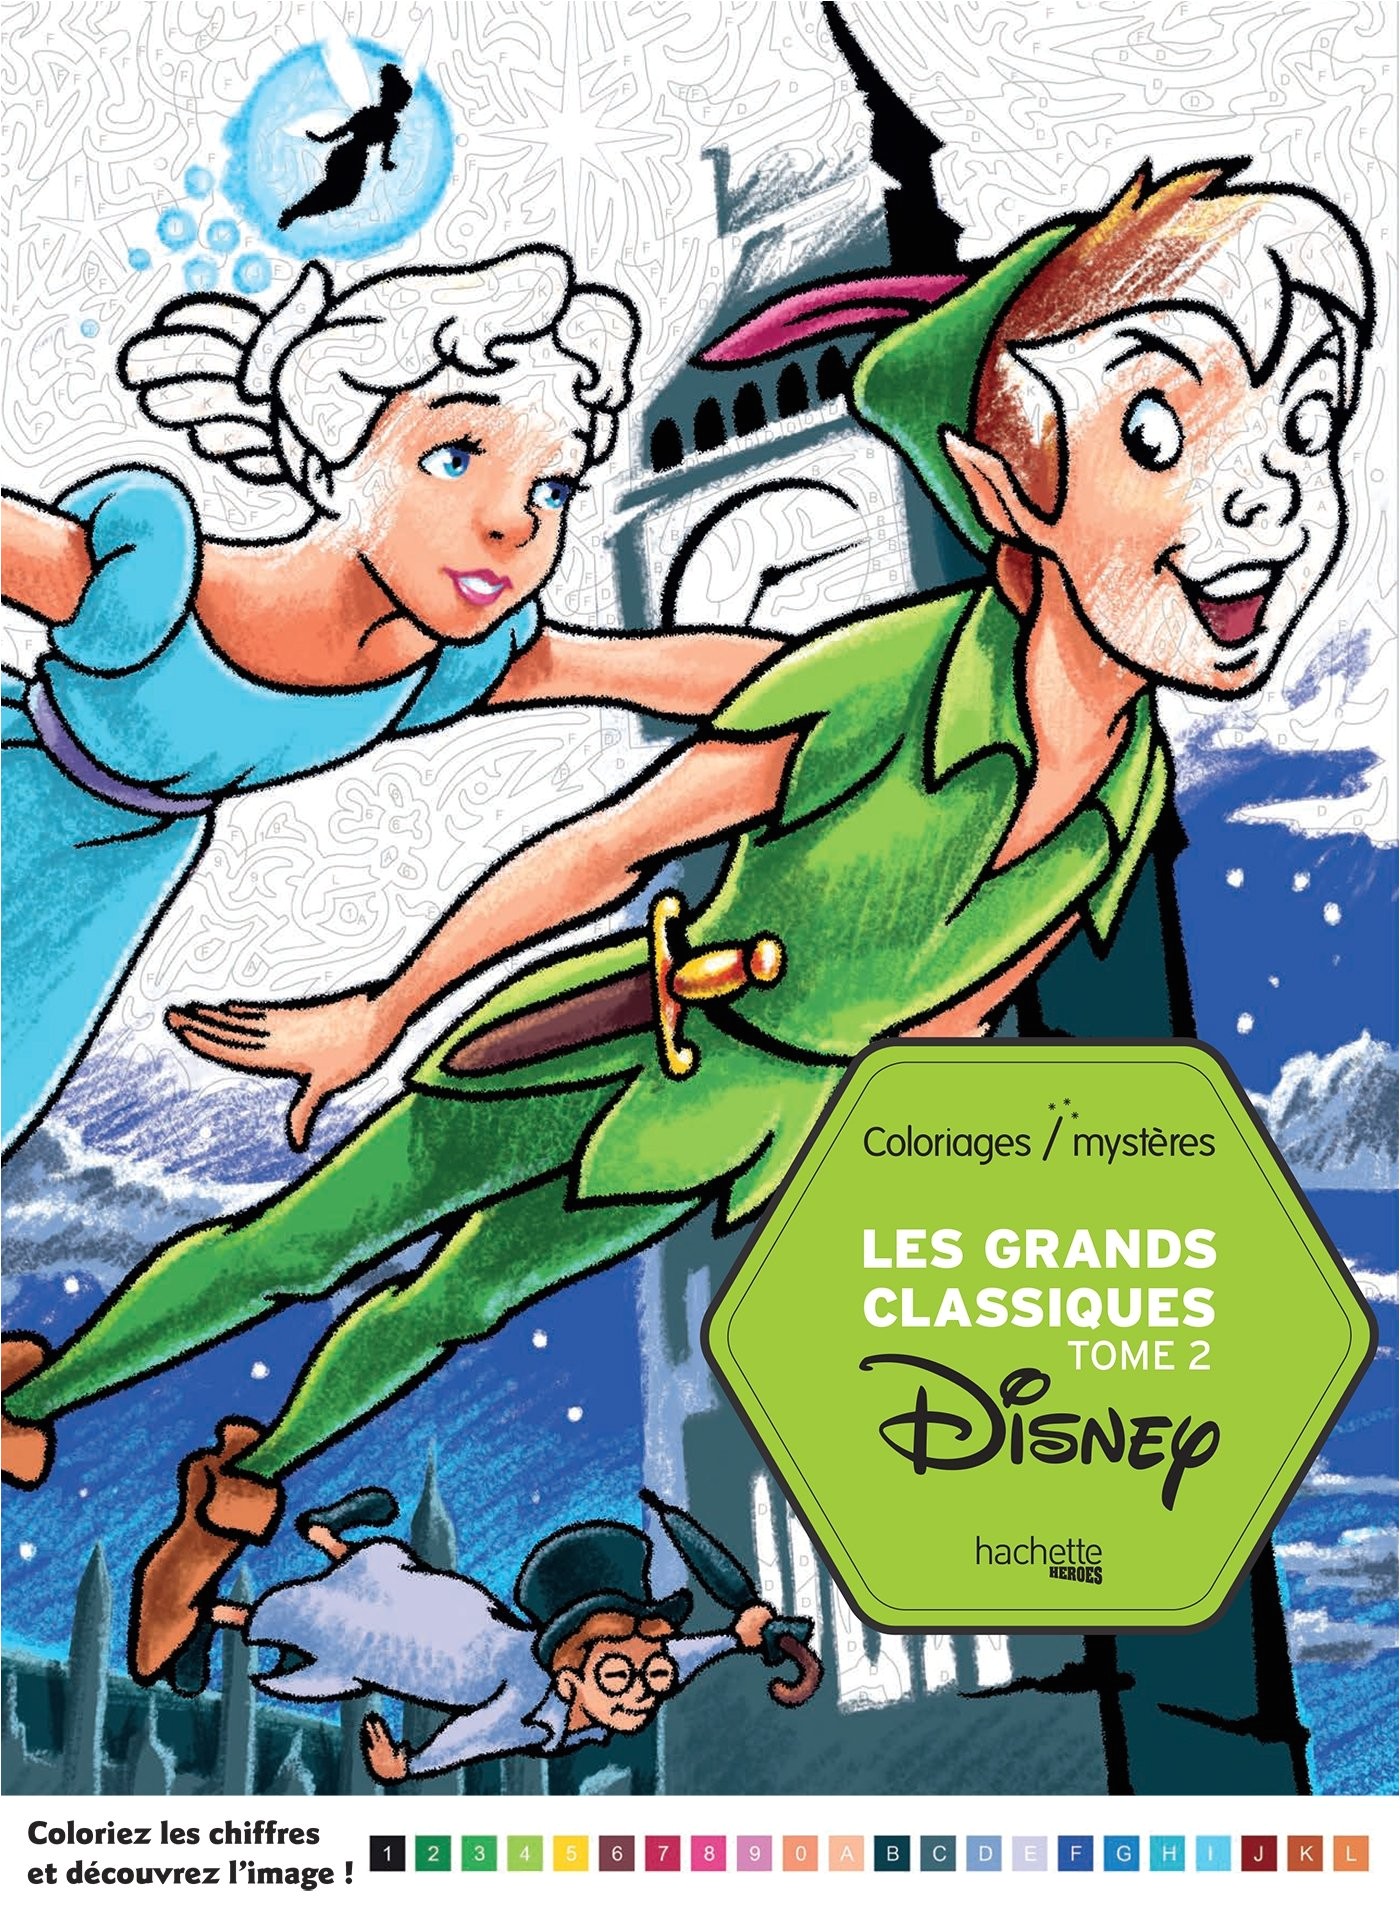 Les grands classiques Disney tome 2 Coloriages par numero Color by numbers French Edition Jérémy Mariez Hachette Amazon Books